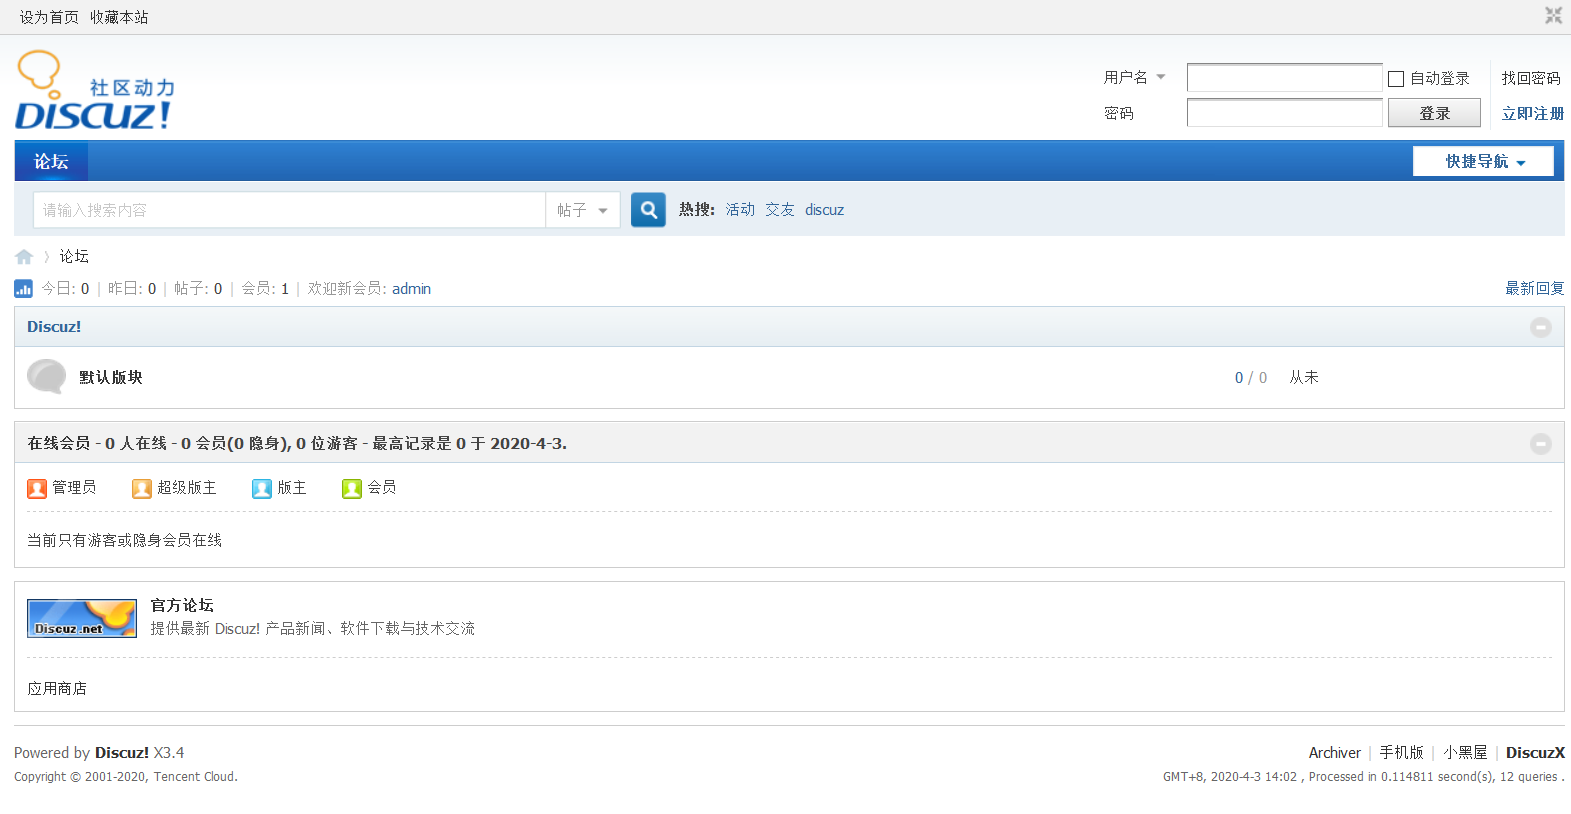 Forum php me. Boyxzeed2 similar. Boyxzeed Discuz. Форум php. Boyxzeed Chinese.